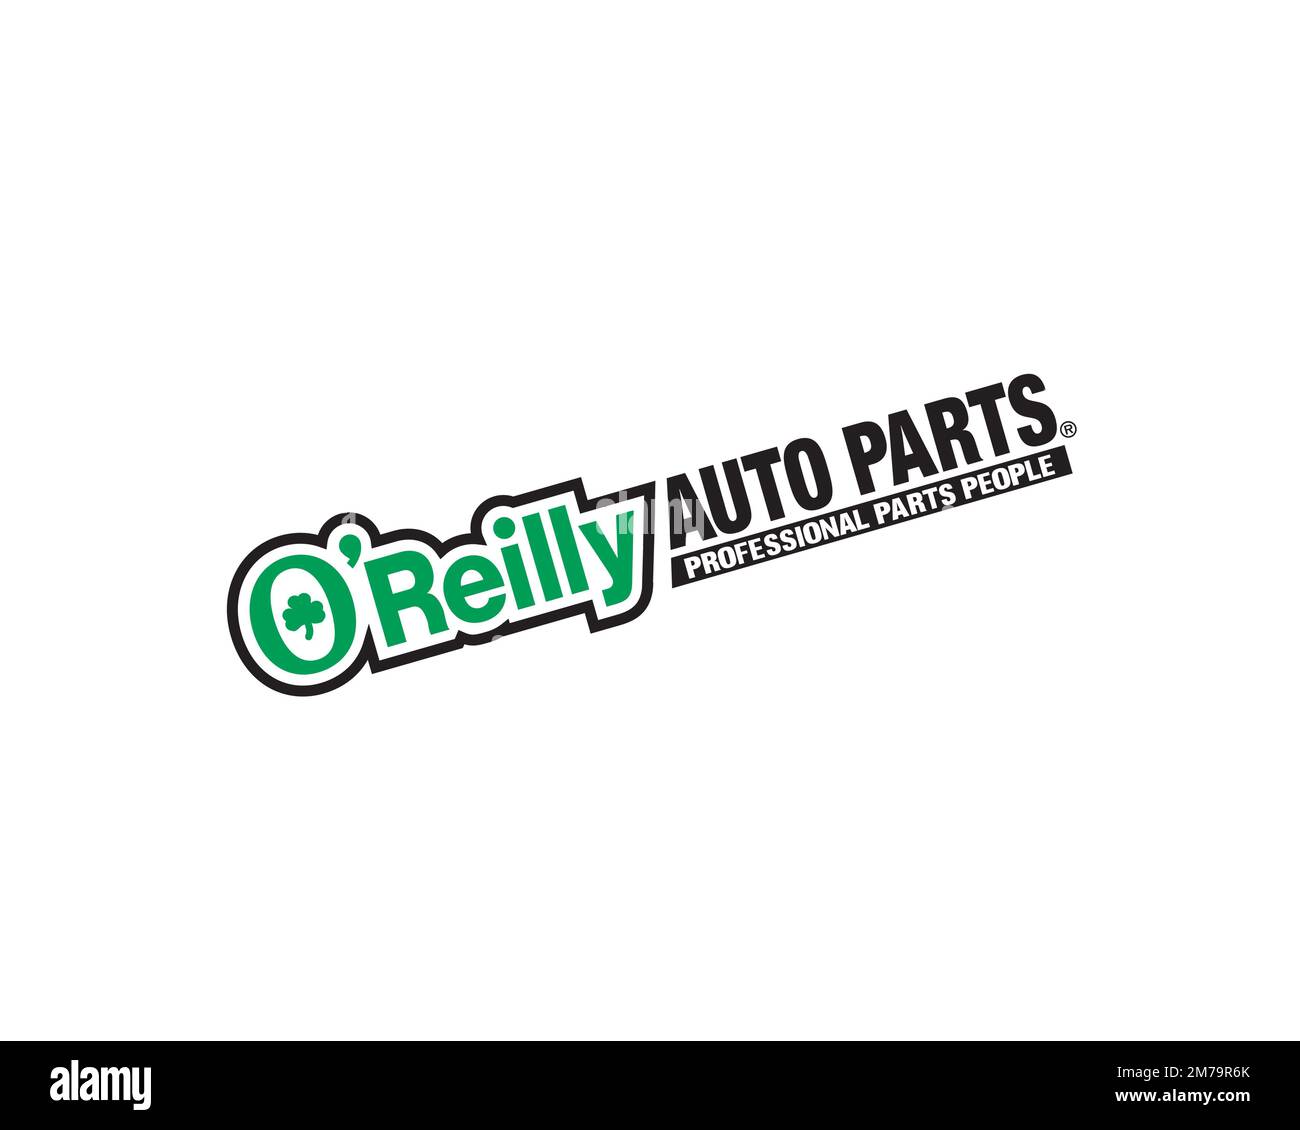 o-reilly-auto-parts-rotated-logo-white-background-stock-photo-alamy